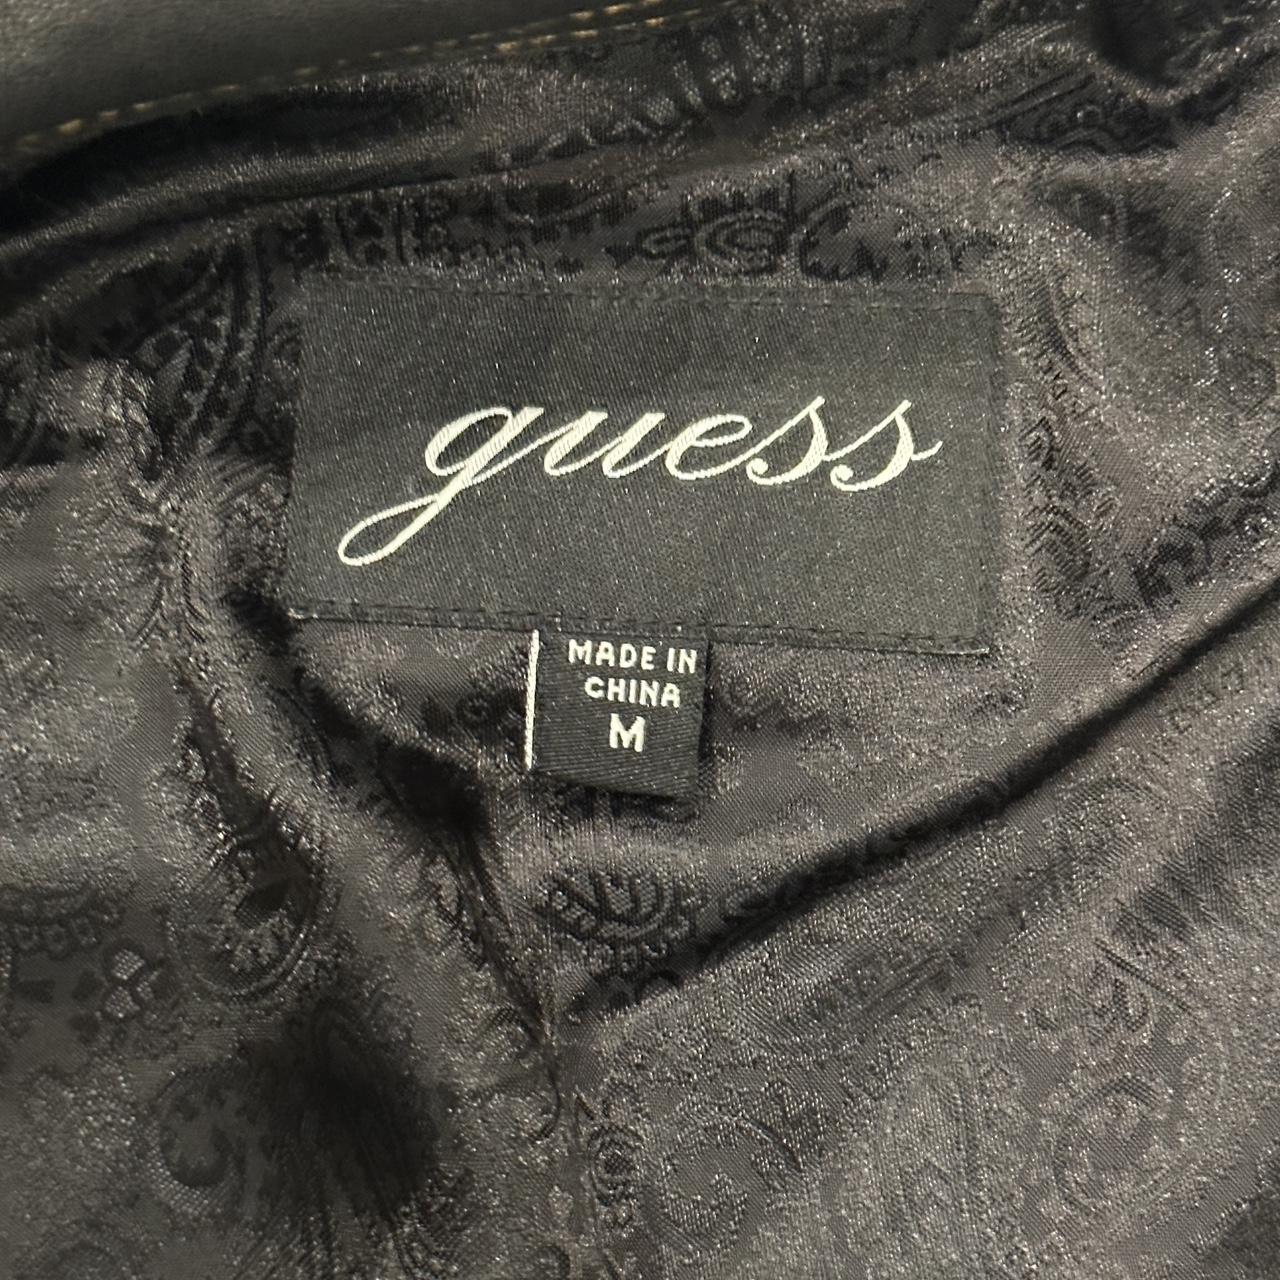 Black Vintage leather guess jacket #90s... - Depop